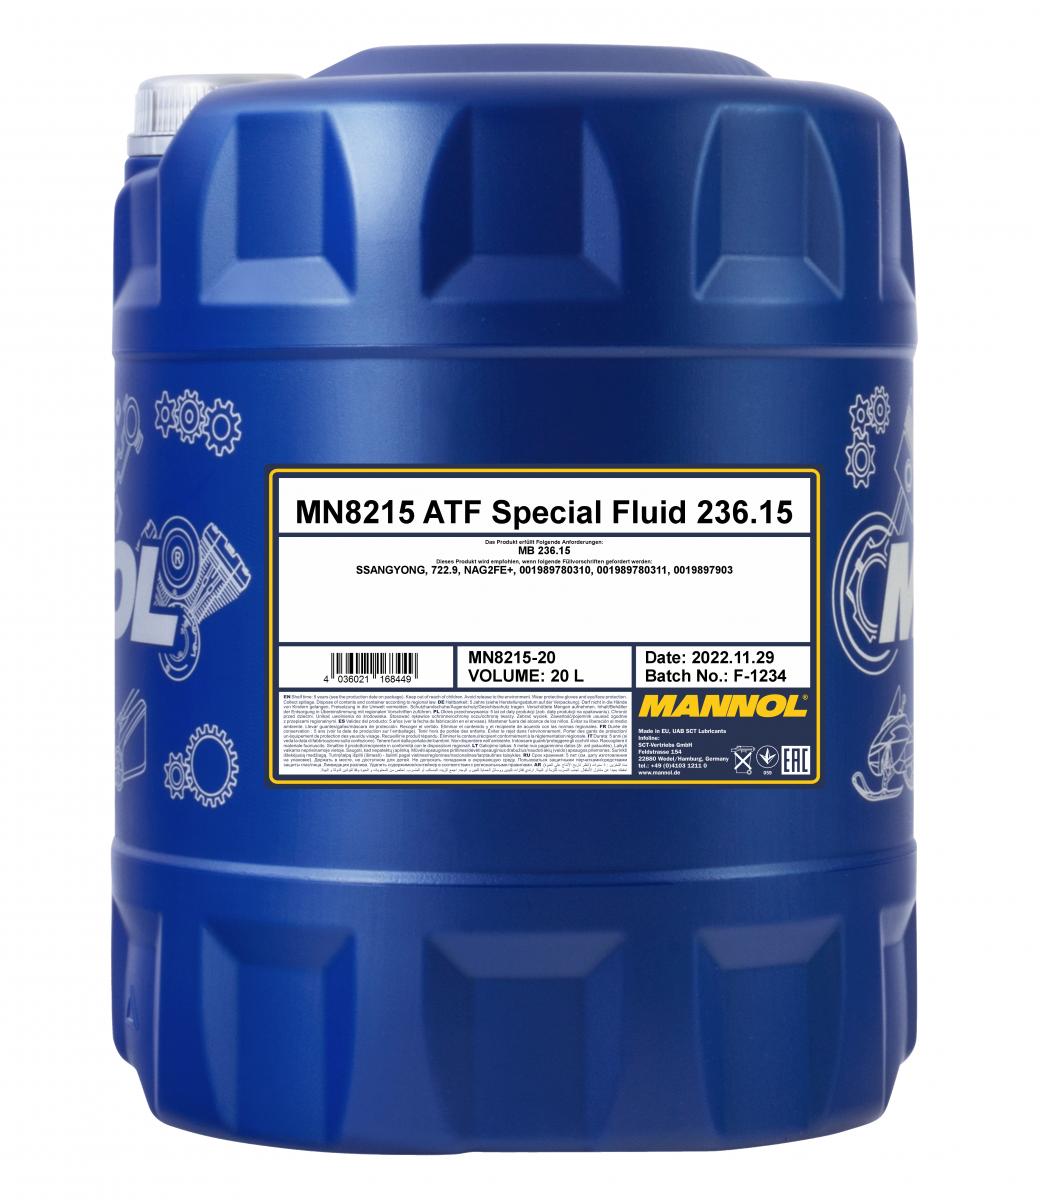 20 Liter MANNOL ATF Special Fluid MB 236.15 MN8215-20 + Ablasshahn